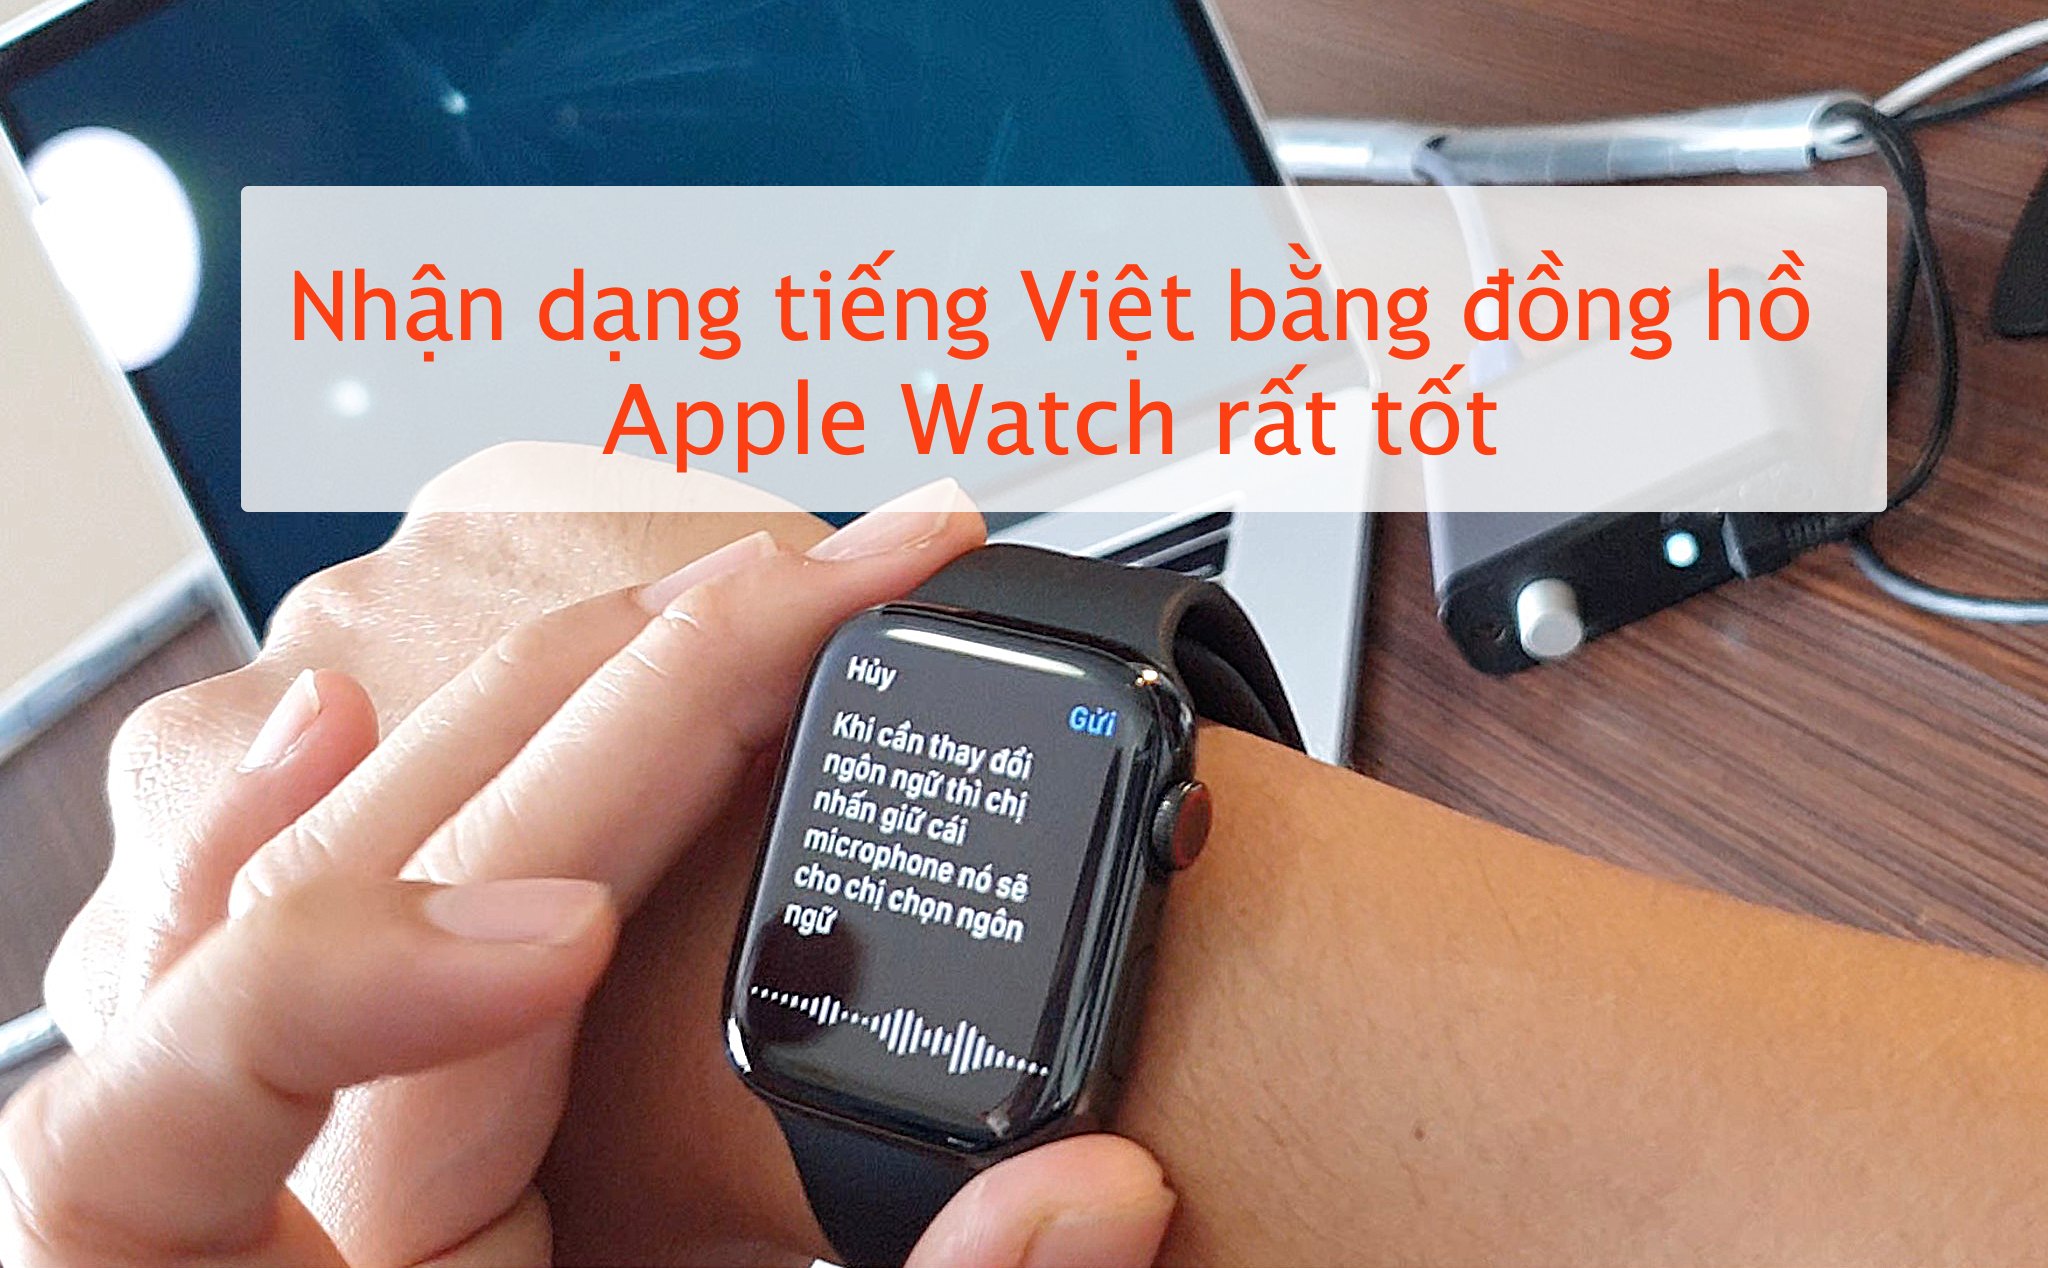 Trả lời tin nhắn, chat bằng Apple Watch: dễ làm, tiện, nhận tiếng Việt khá tốt